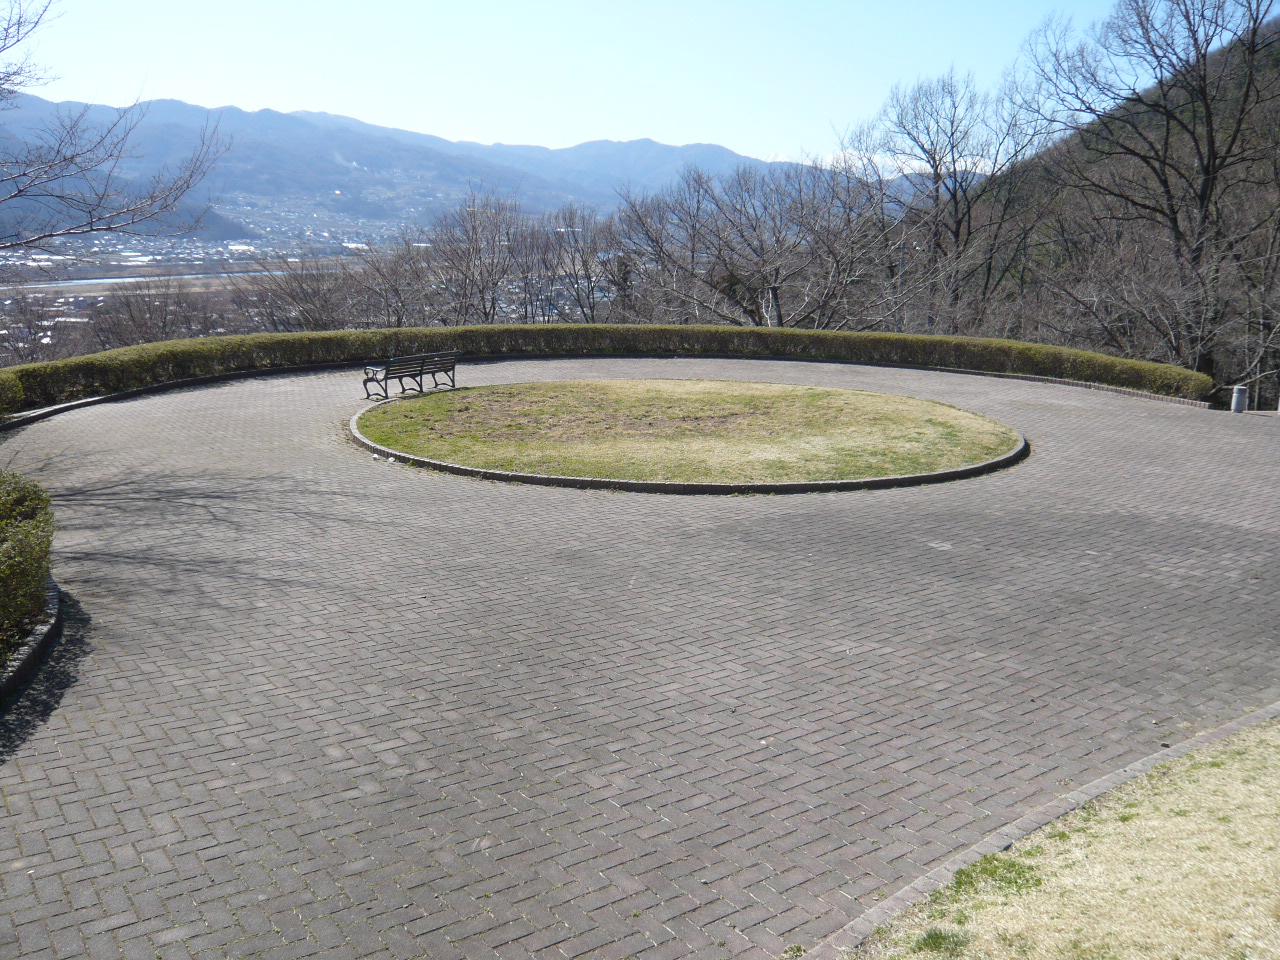 中心に円形の芝生がある、円形をした石畳の広場の写真